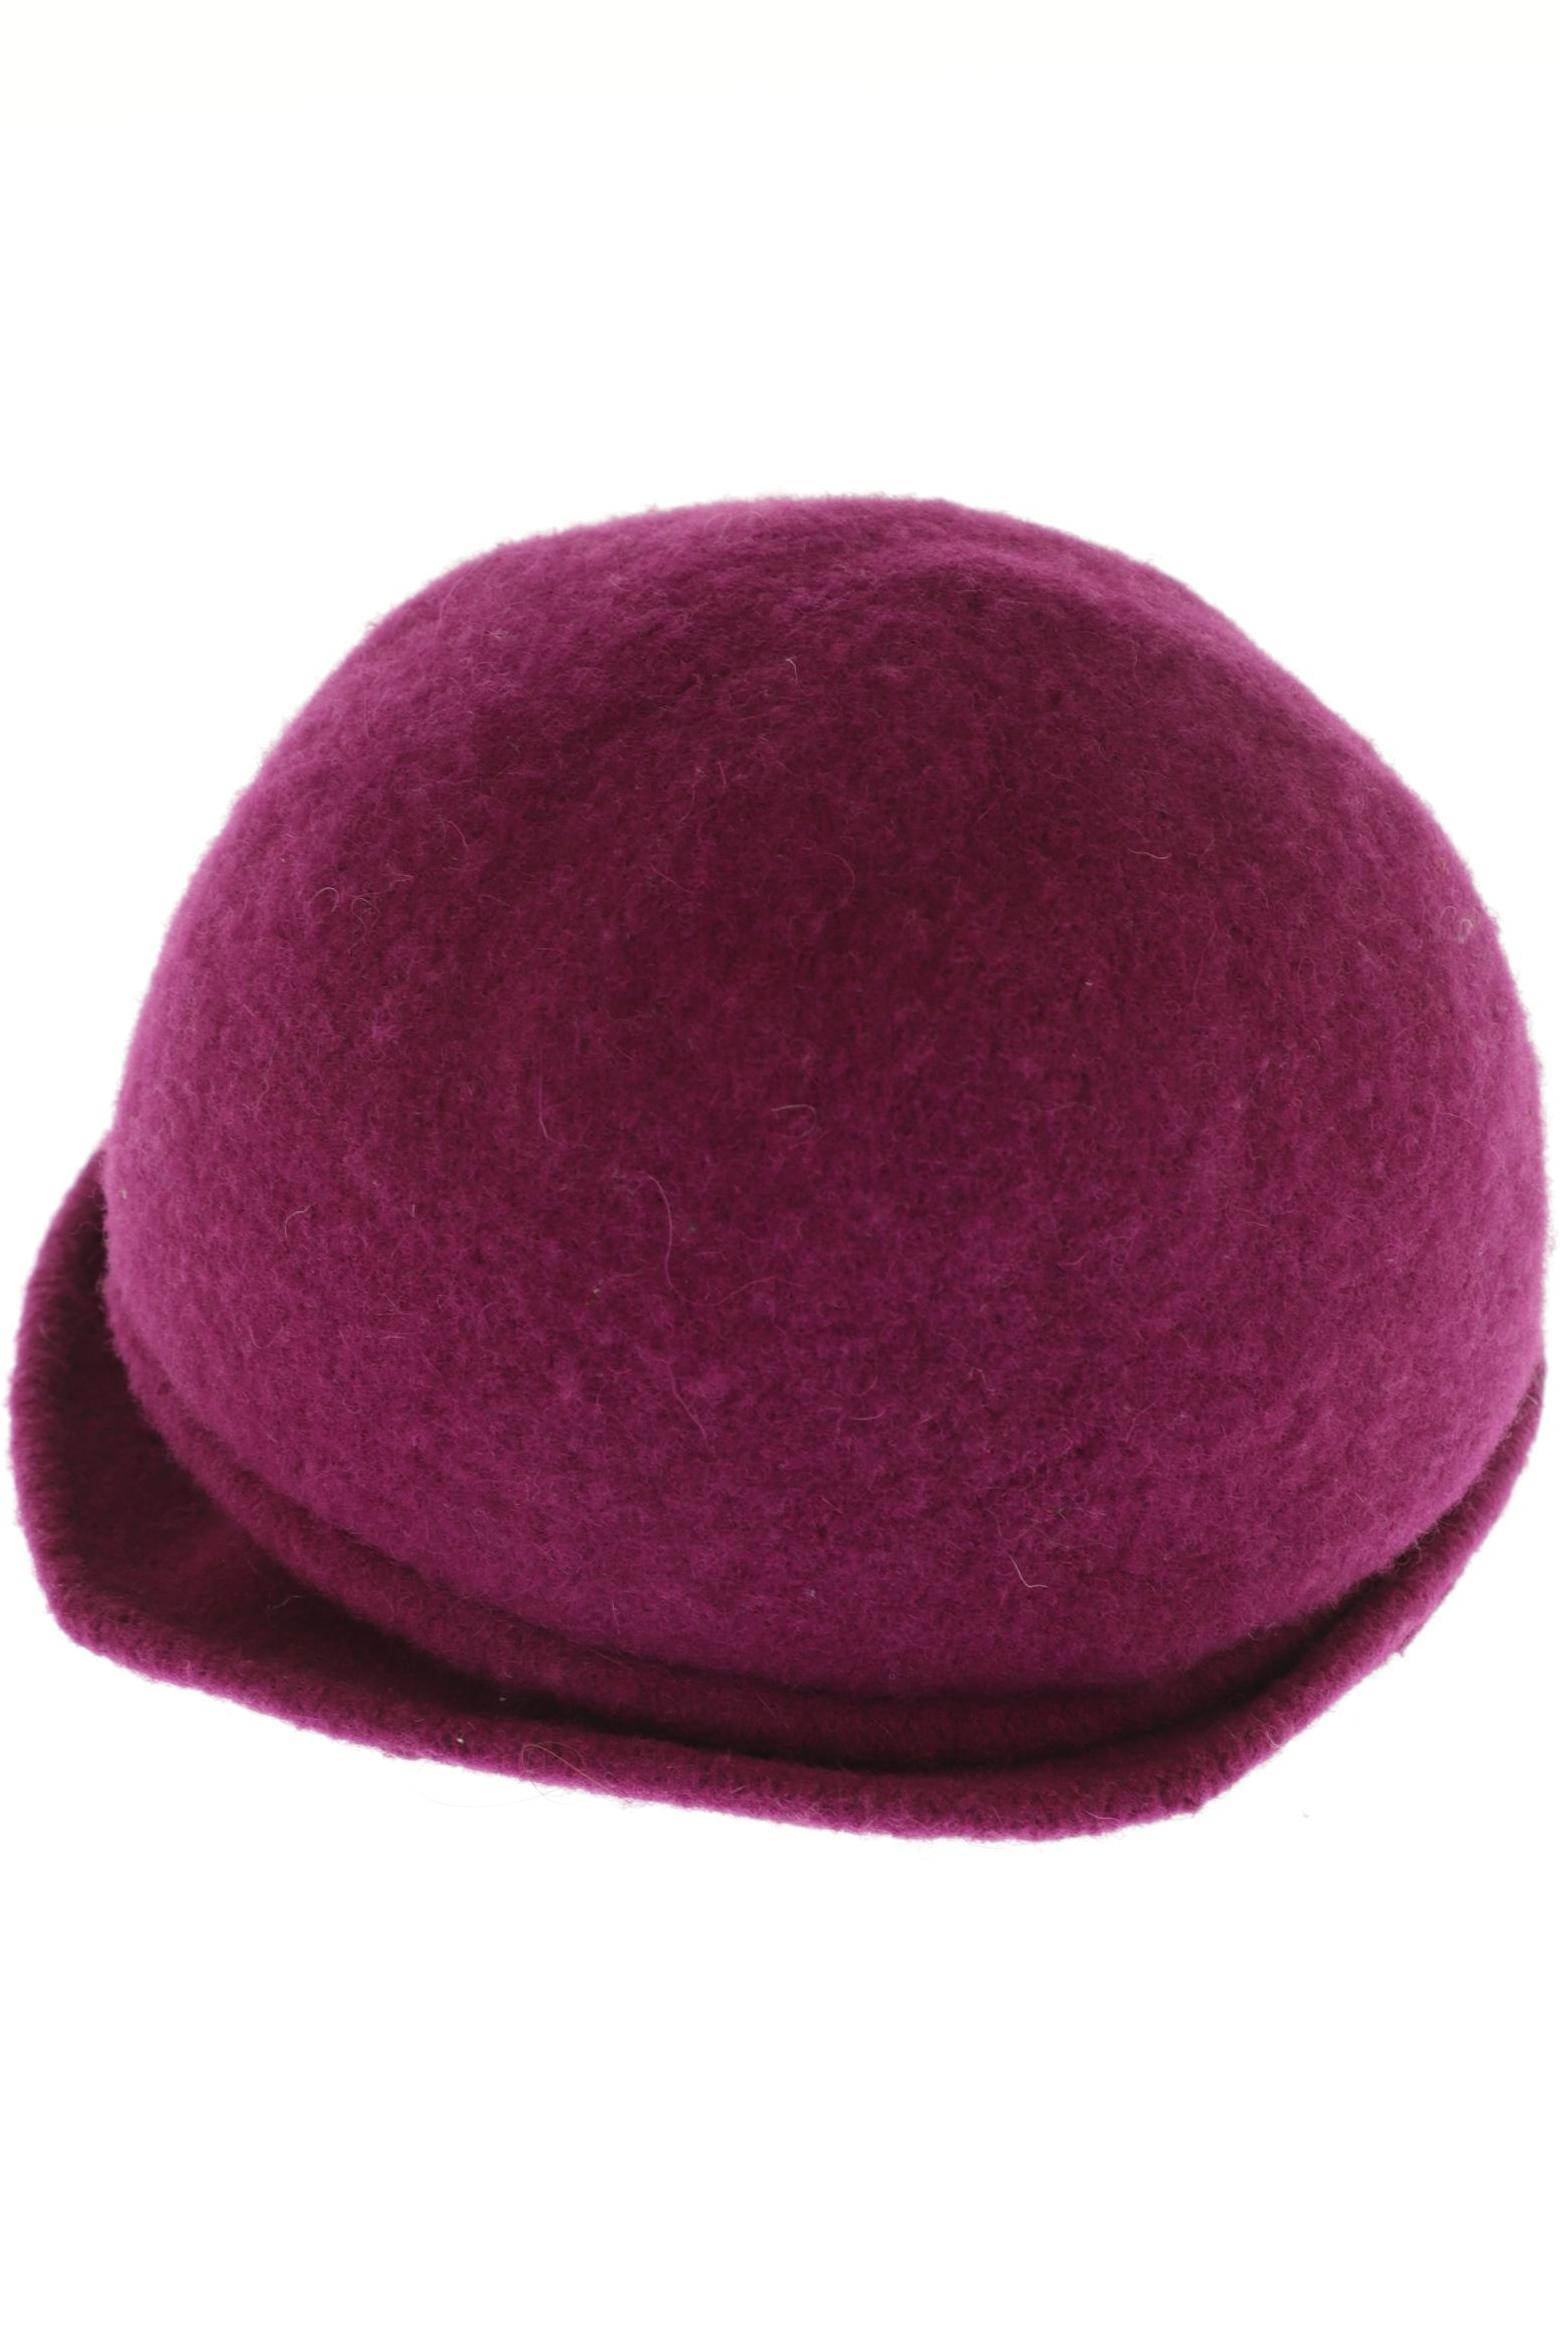 Seeberger Damen Hut/Mütze, pink von Seeberger